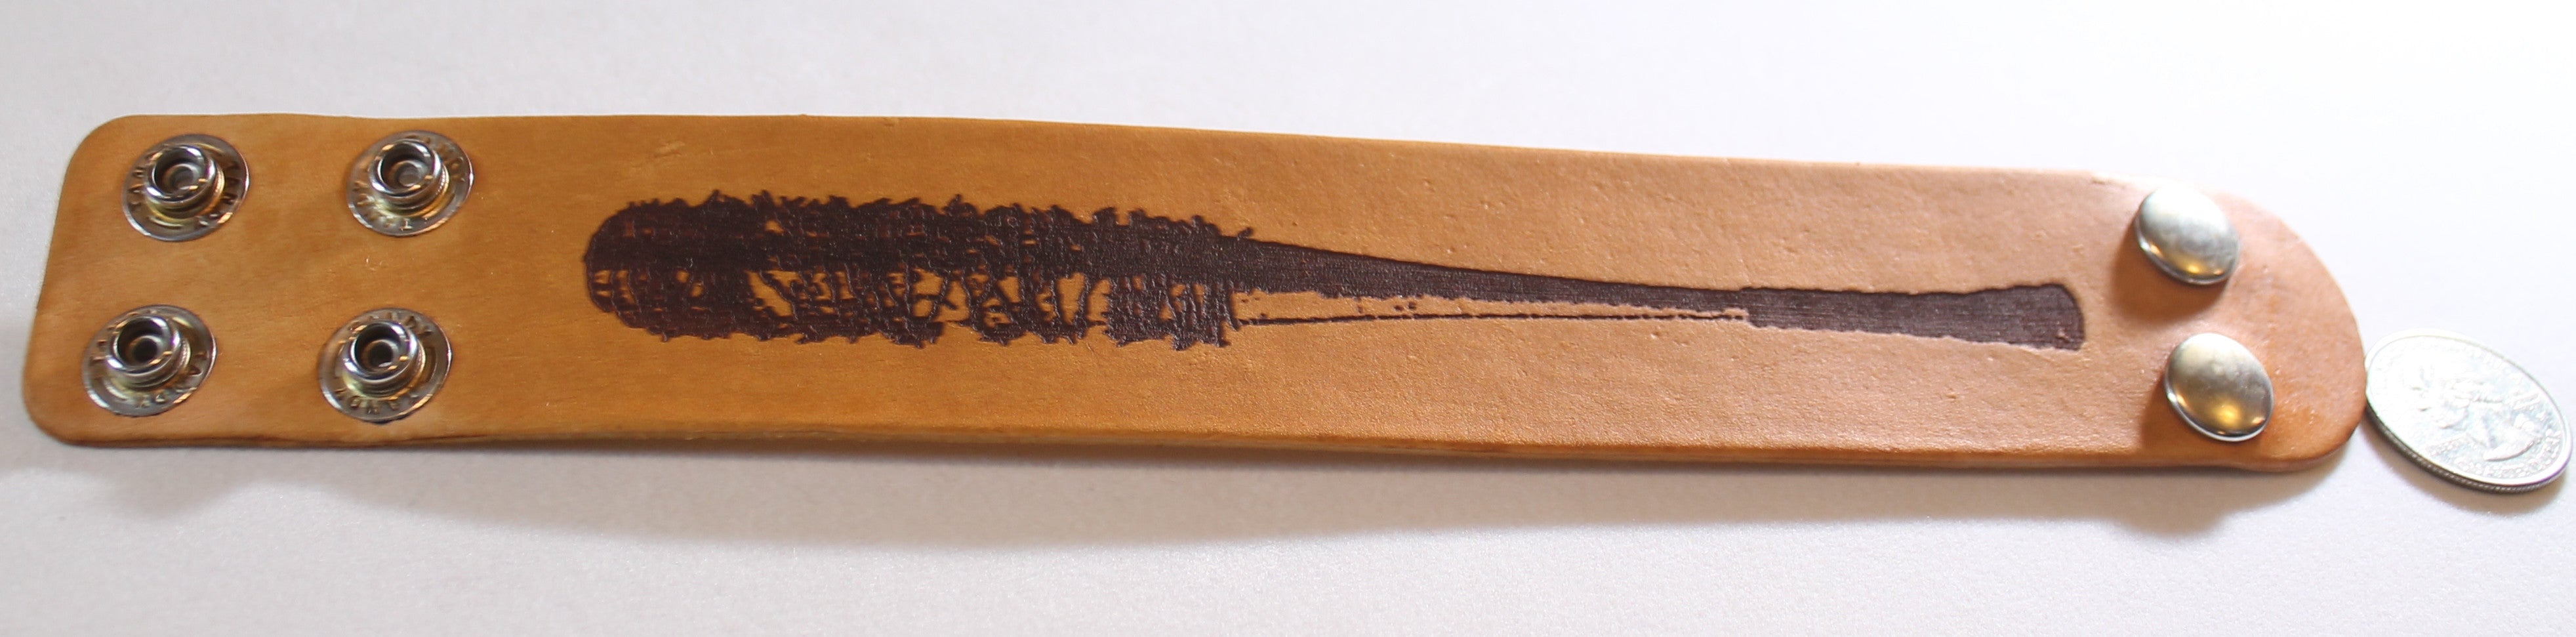 Bat barbed wired, Negan, walking dead laser engraved stained leather bracelet - Samstagsandmore